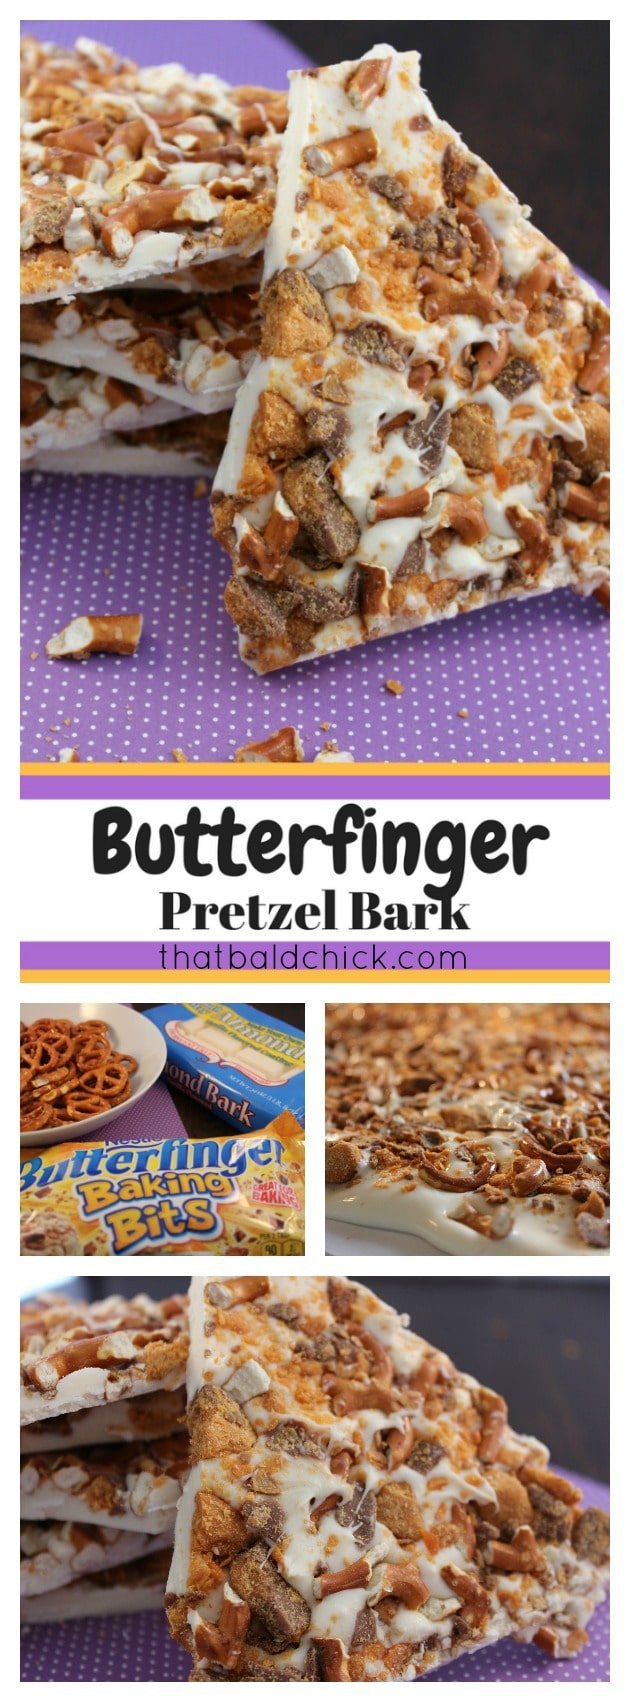 Butterfinger Pretzel Bark Recipe at thatbaldchick.com